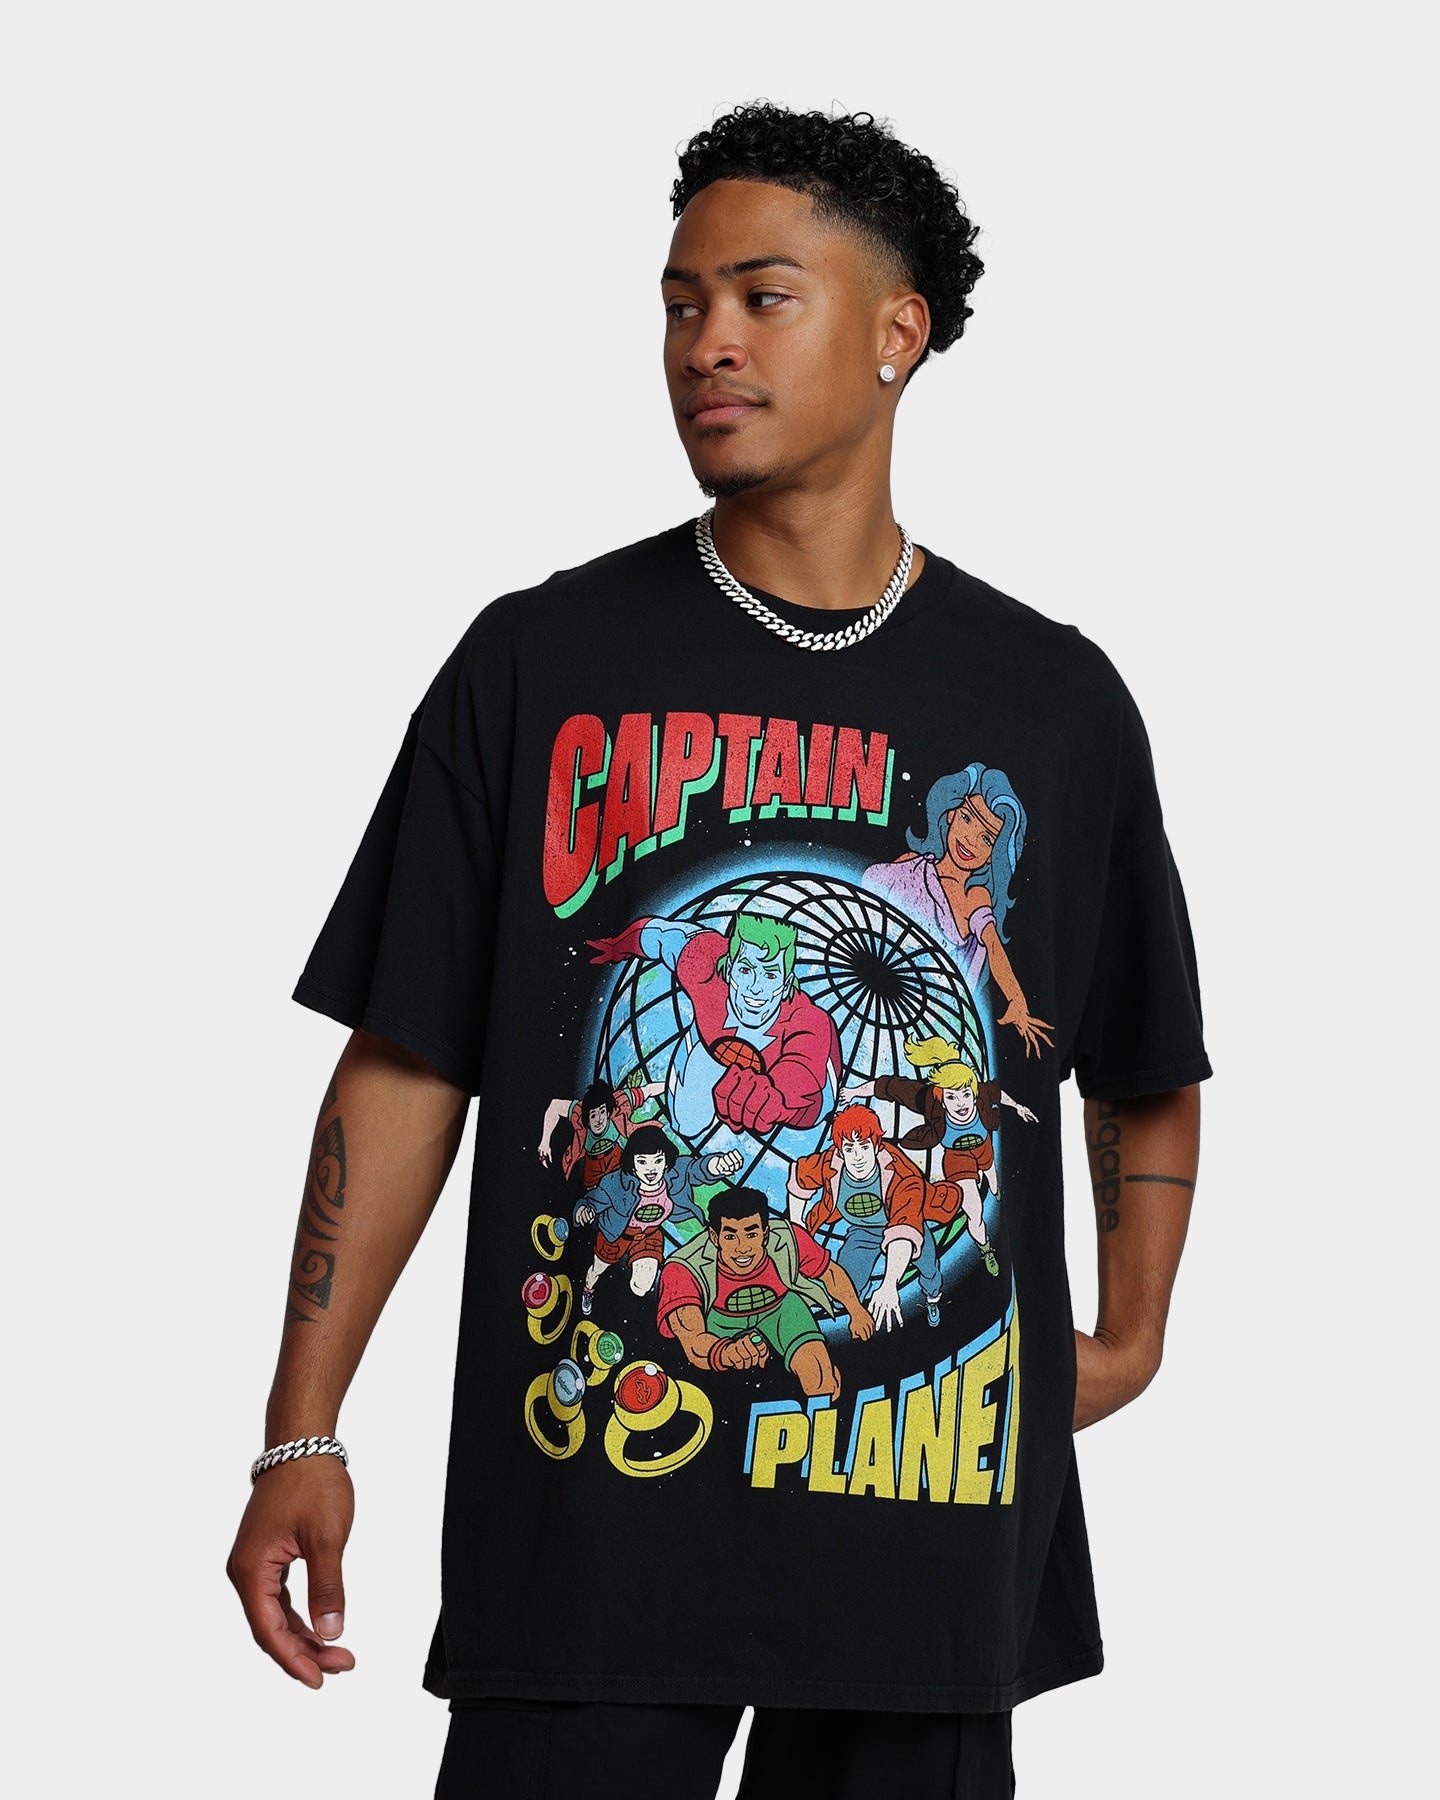 Goat Crew X Captain Planet Captain Planet Vintage T-Shirt